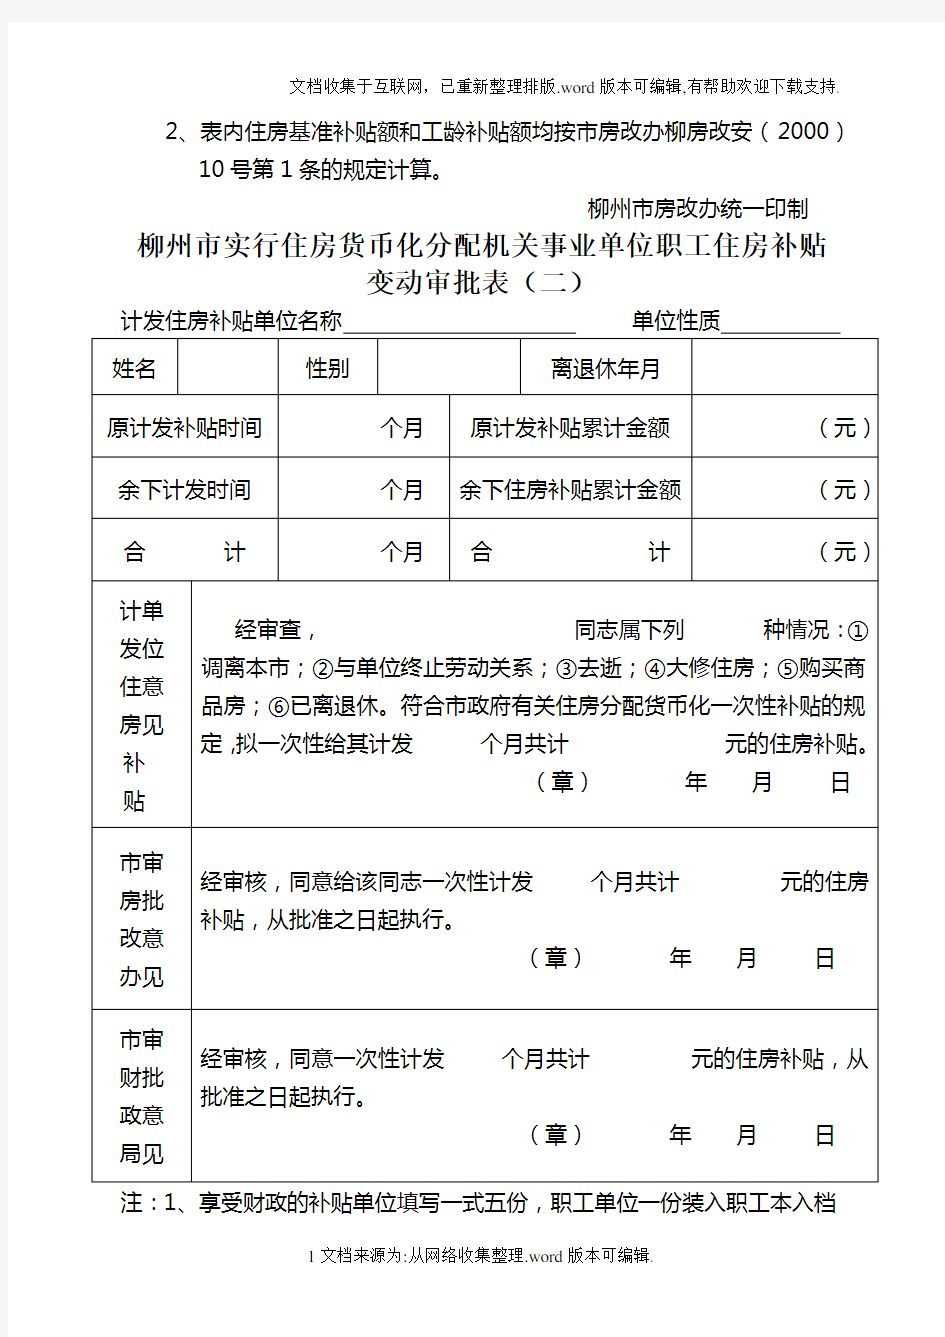 柳州市实行住房货币化分配机关事业单位职工住房补贴